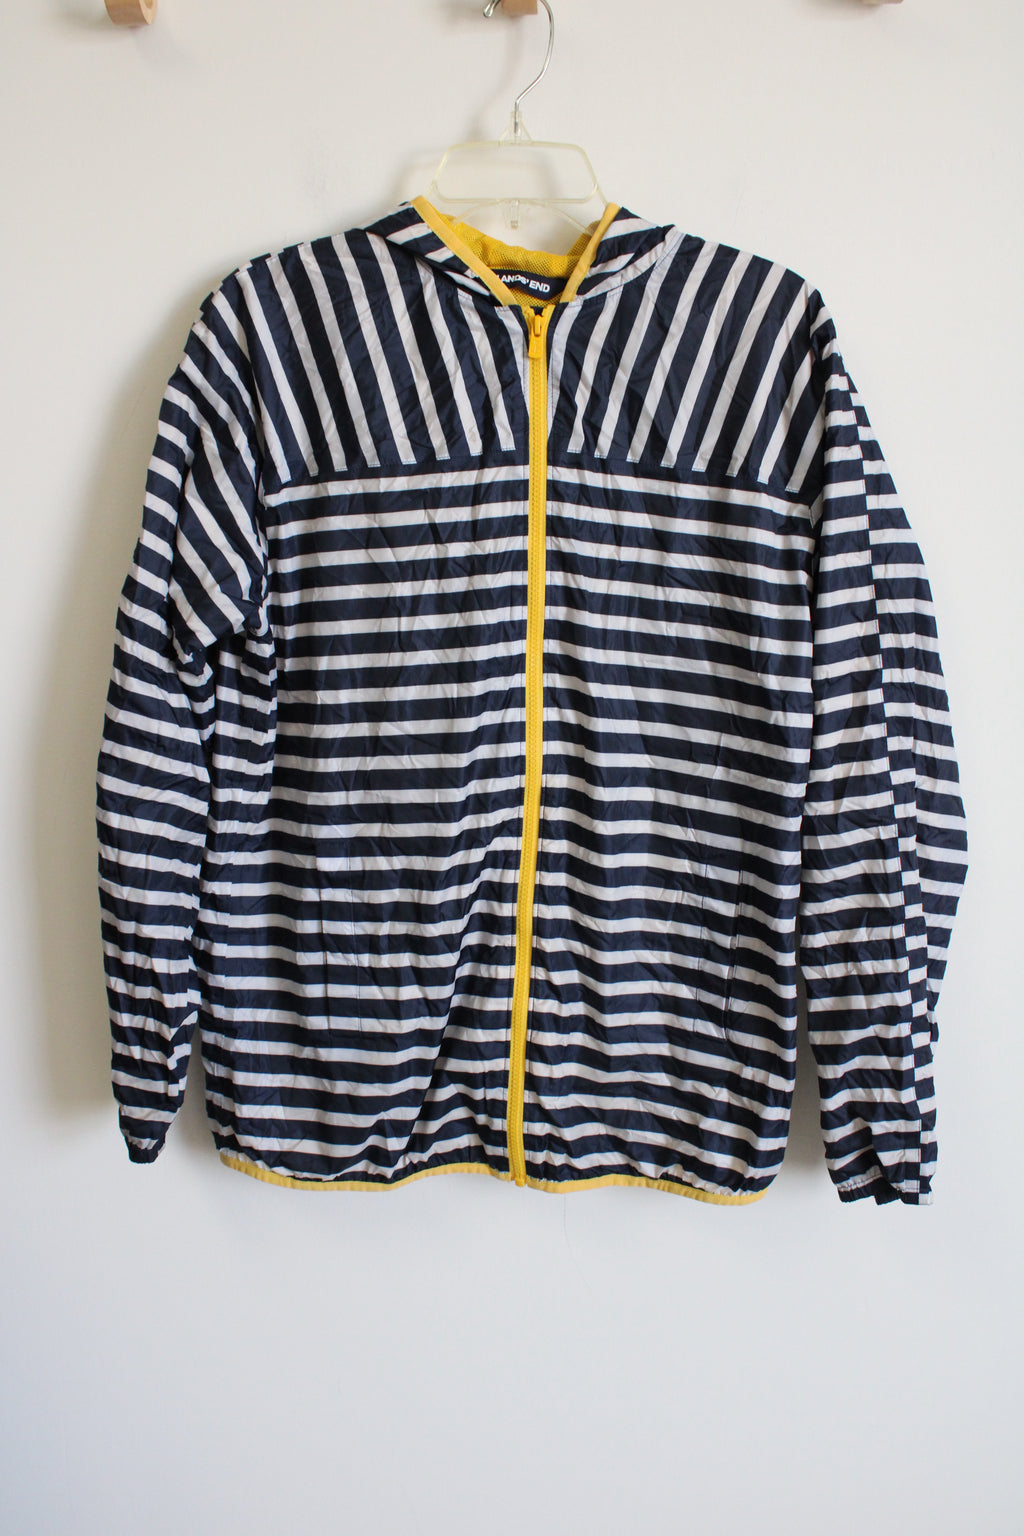 Lands' End Navy Blue Striped Windbreaker Jacket | Youth XL (18/20)